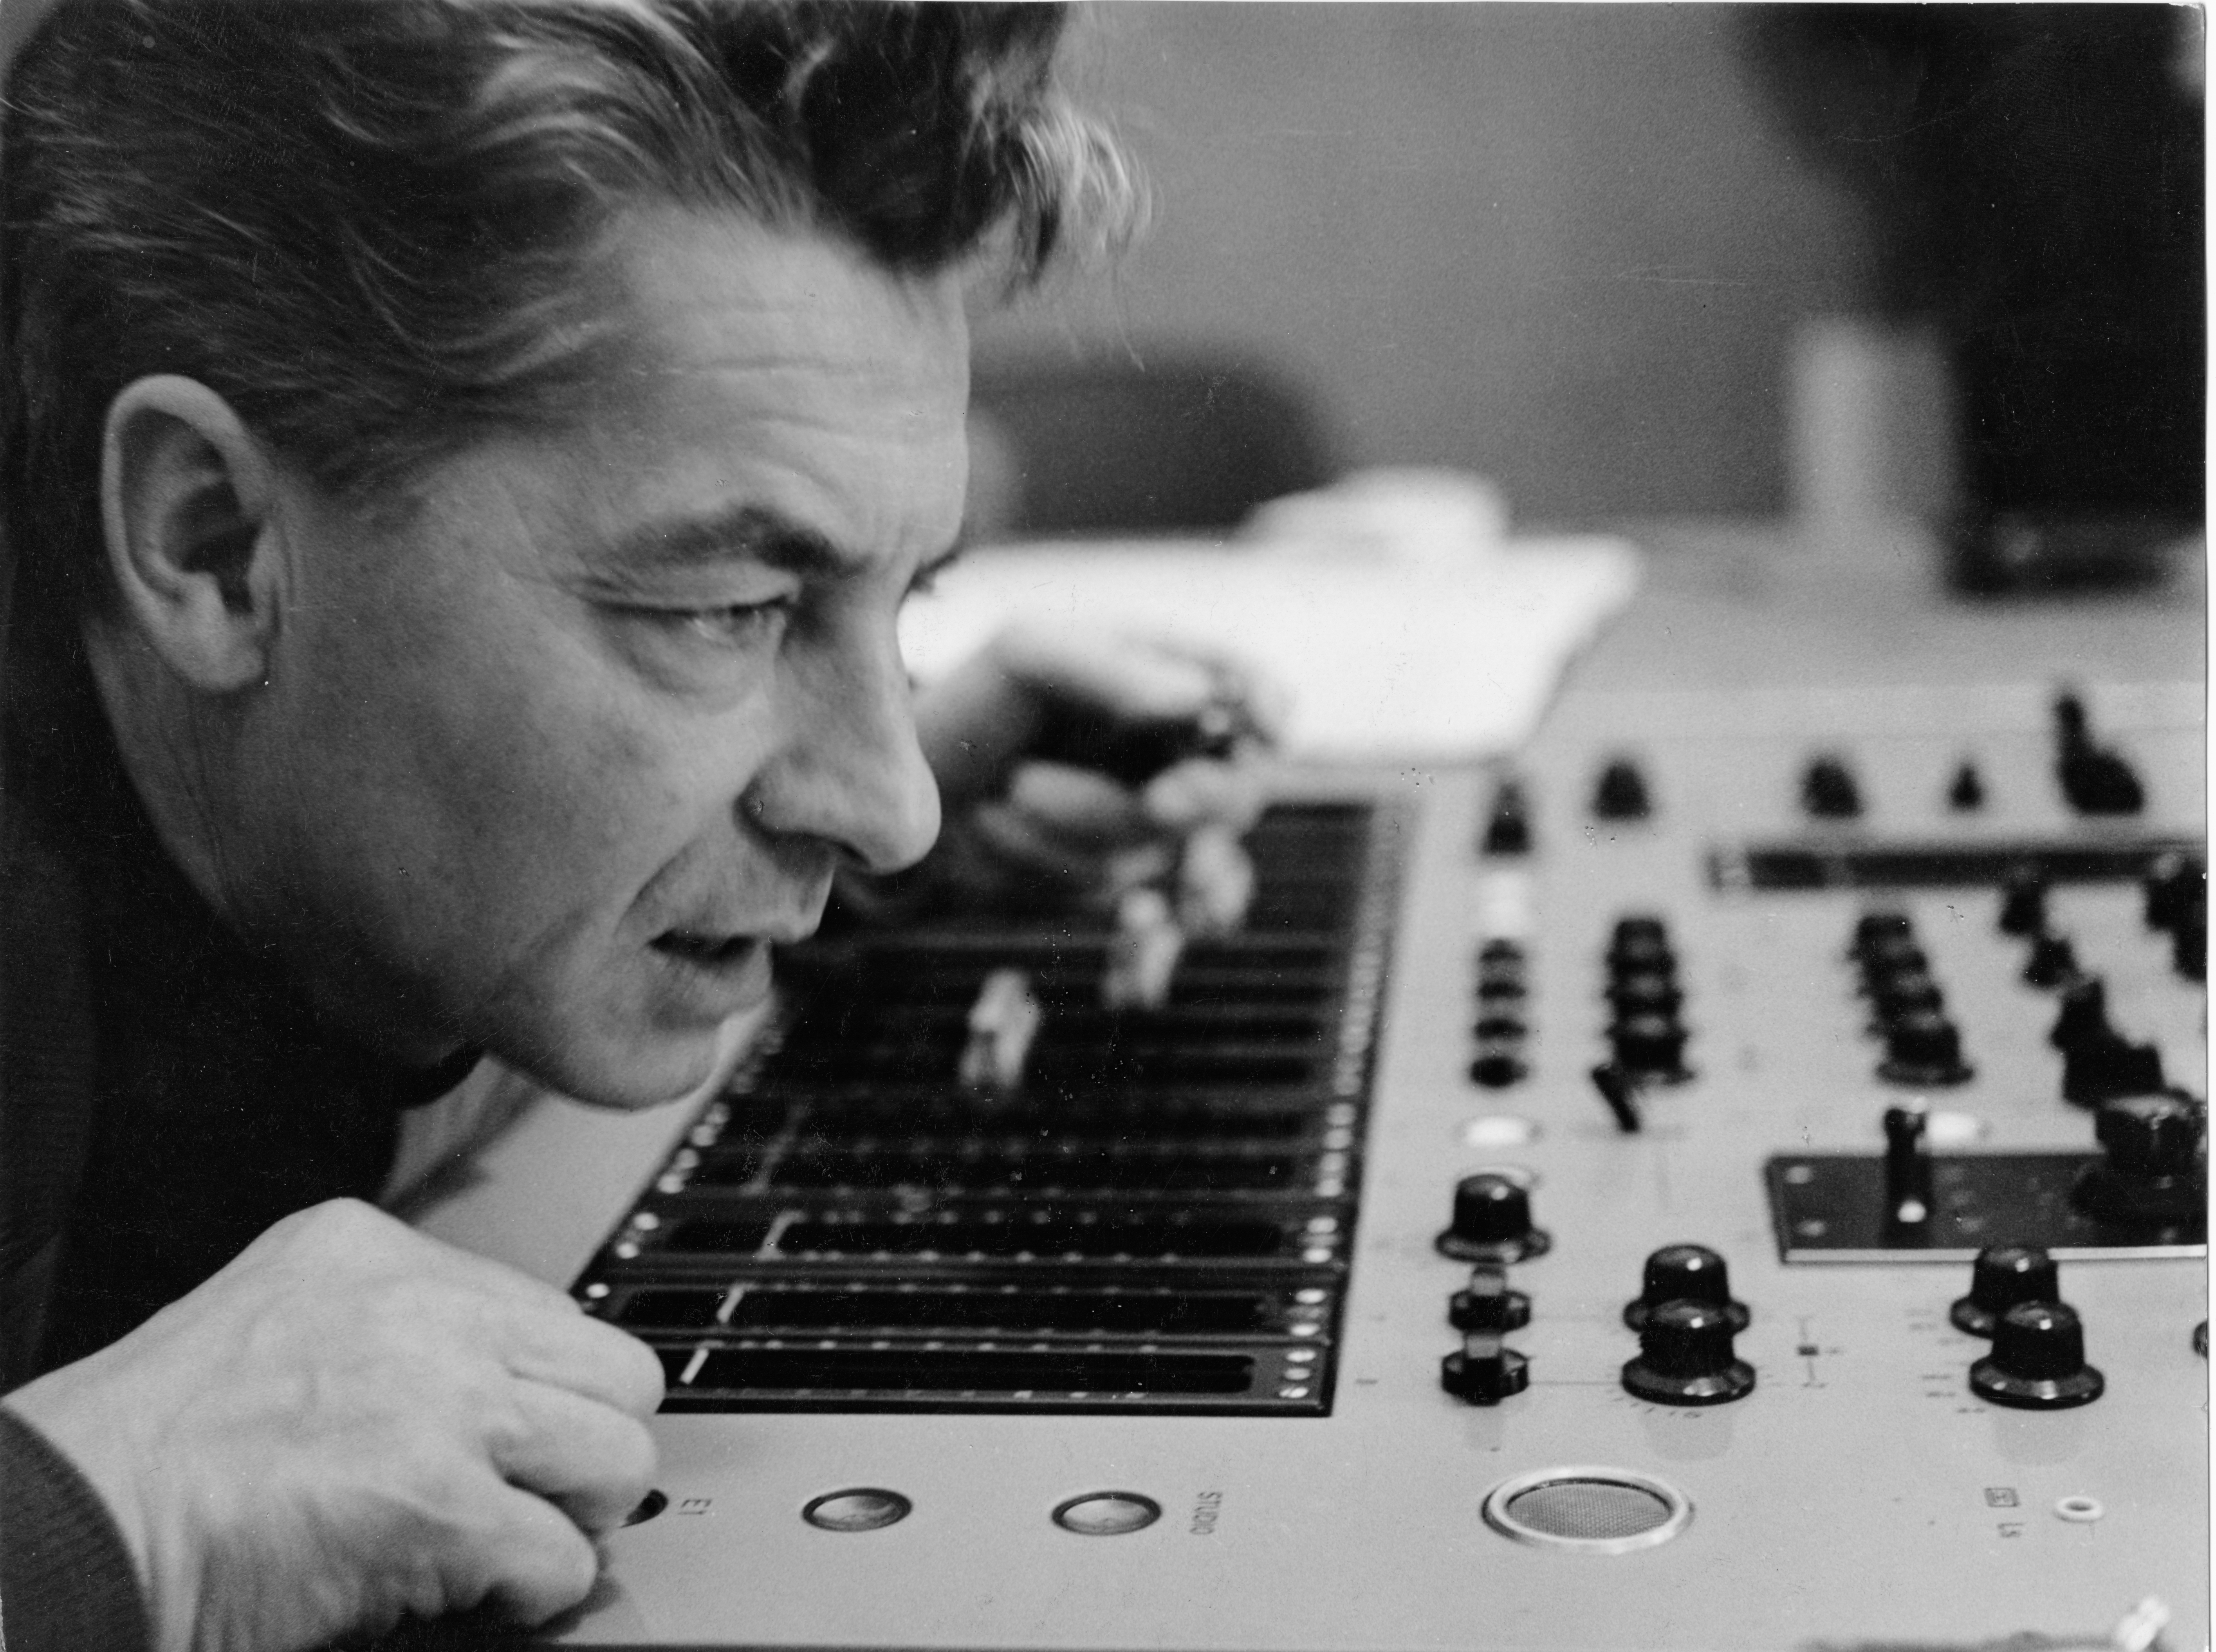 Herbert von Karajan looking at a mixing desk.